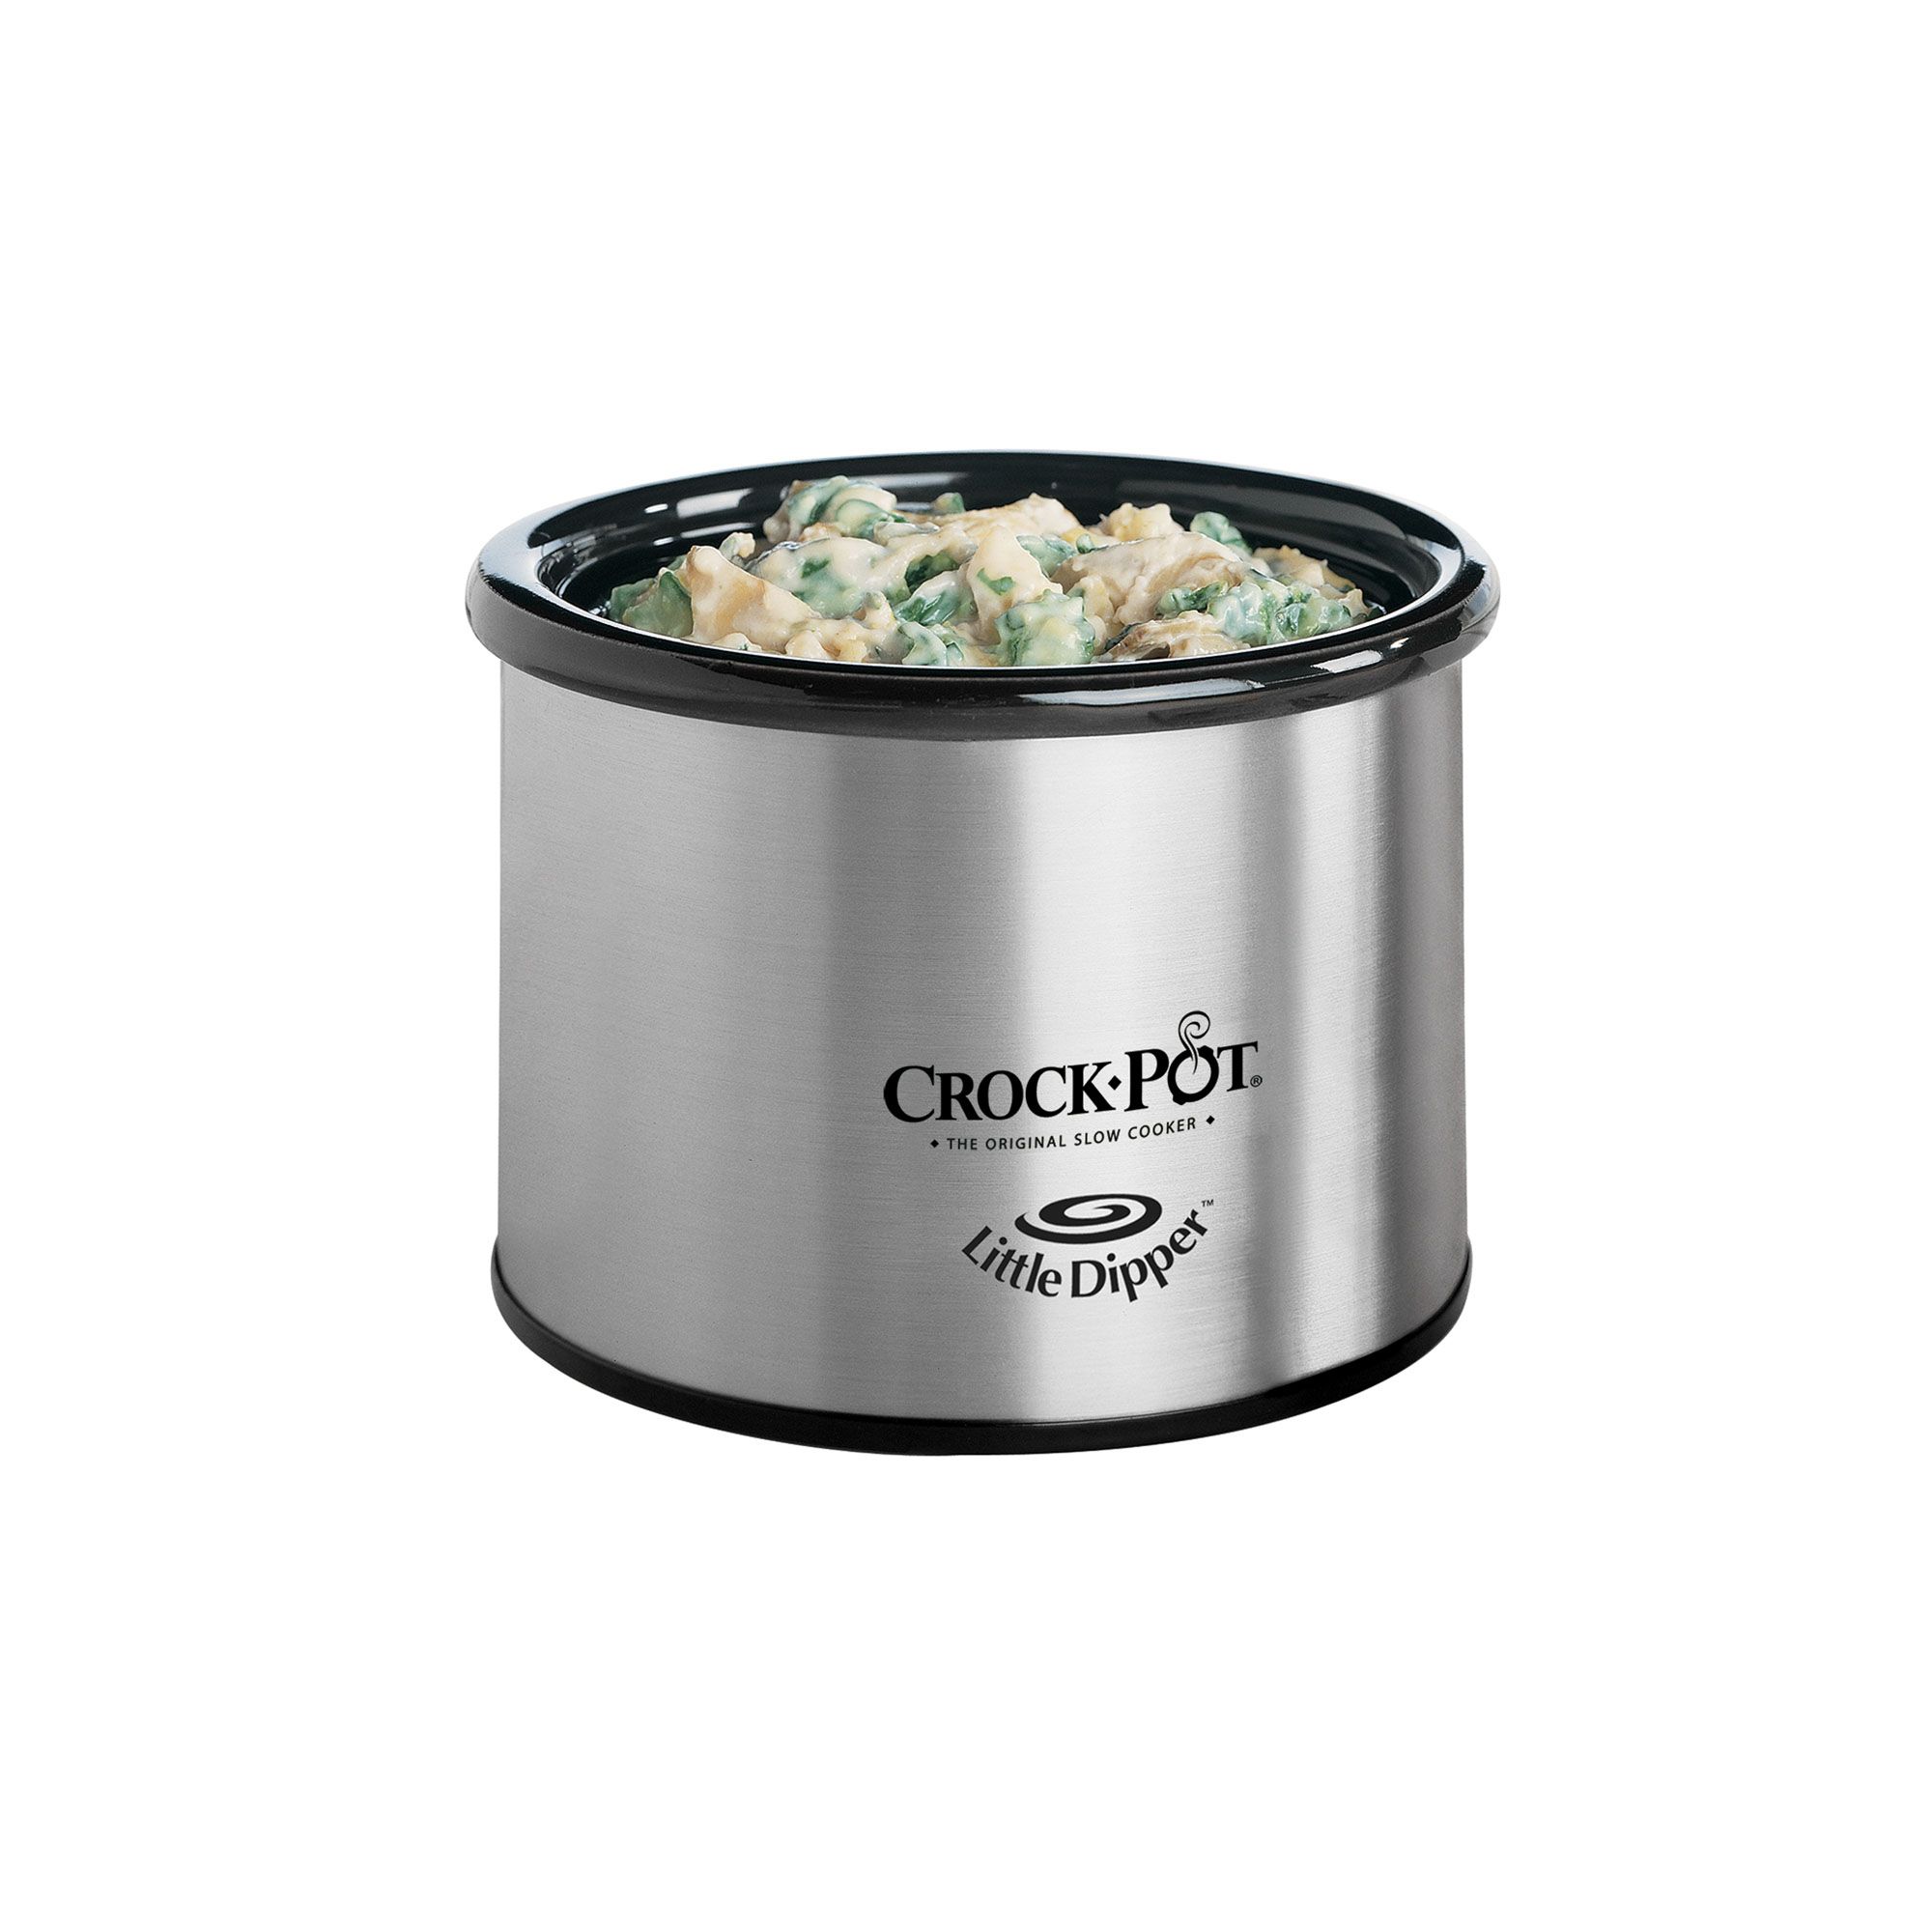 crock pot, Kitchen, Crock Pot Little Dipper